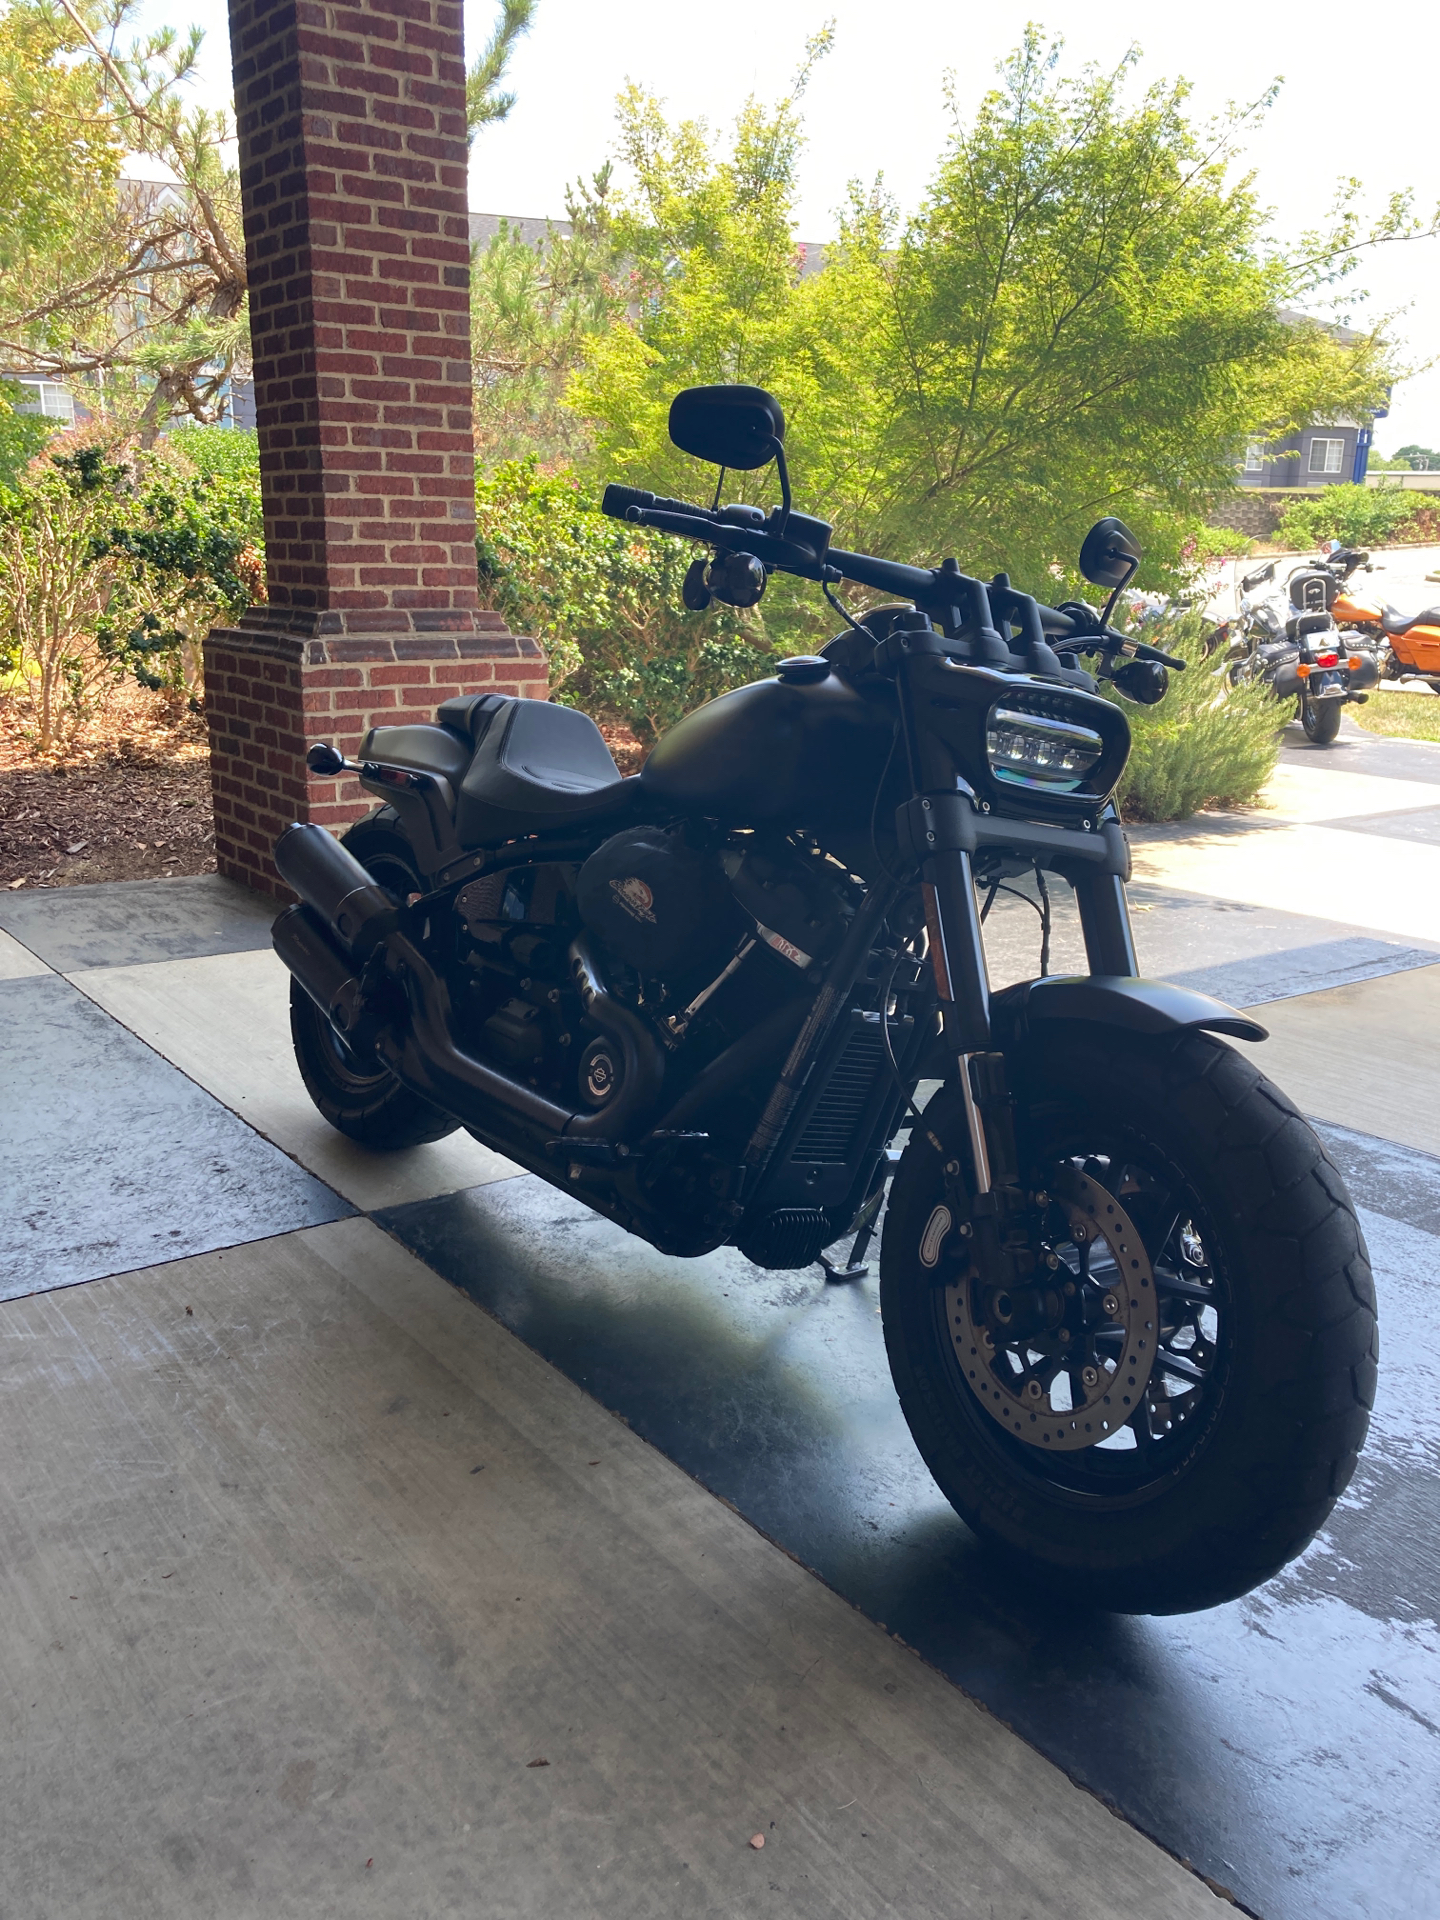 2018 Harley-Davidson Fat Bob® 114 in Burlington, North Carolina - Photo 4